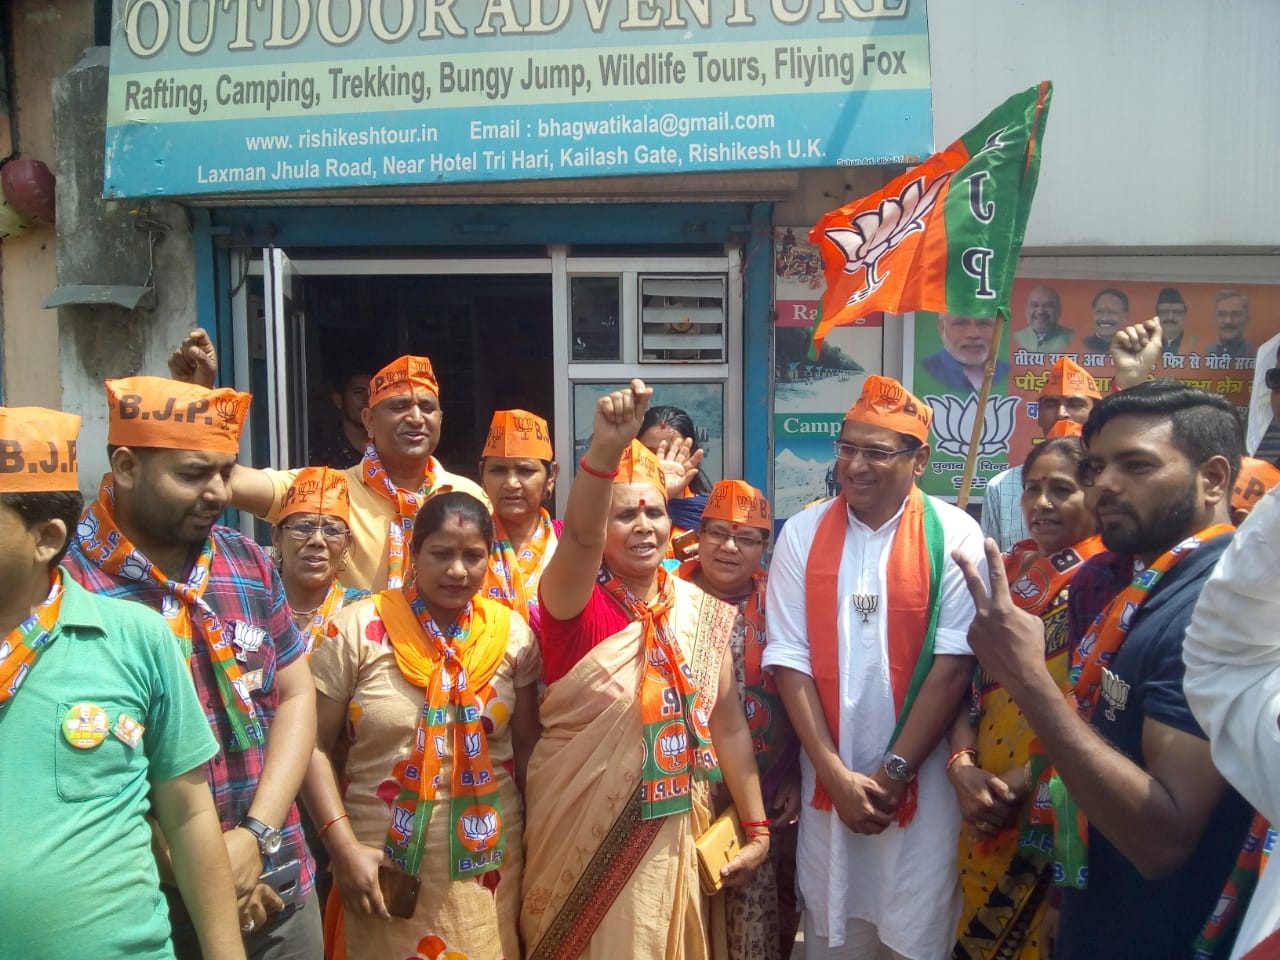 भाजपा सदस्य शौर्य डोभाल ने किया पार्टी के लिए प्रचार लोगों से टीएस रावत को वोट देने का आग्रह